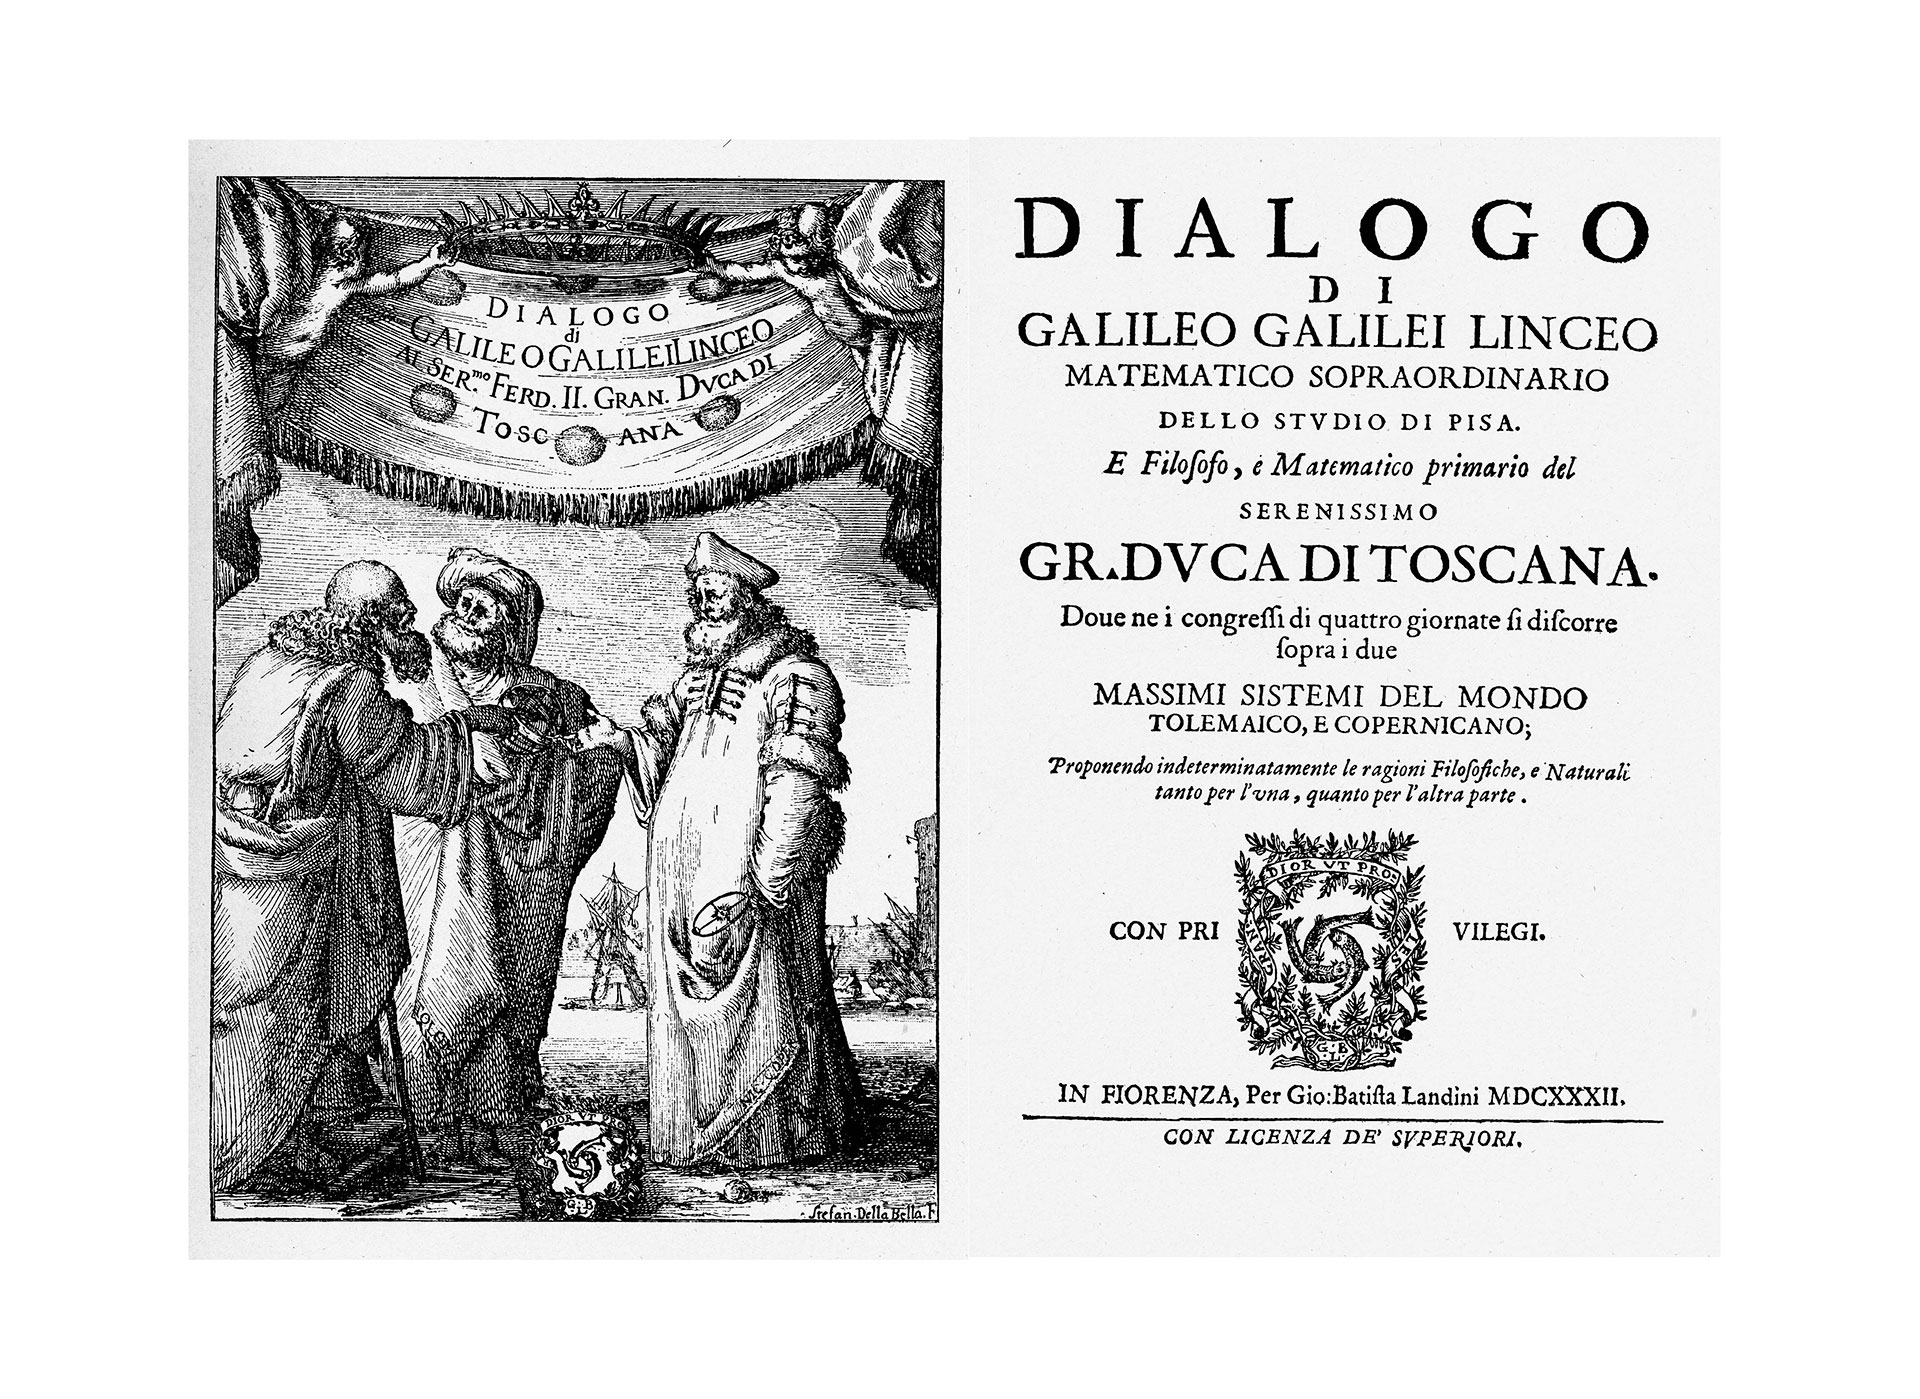 “El Diálogo", tratado de Galileo Galilei donde se burlaba implícitamente del geocentrismo de Ptolomeo y tenía una clara tendencia pro-copernicana. Fue el centro de todo el debate que se generó en torno al astrónomo nacido en Pisa